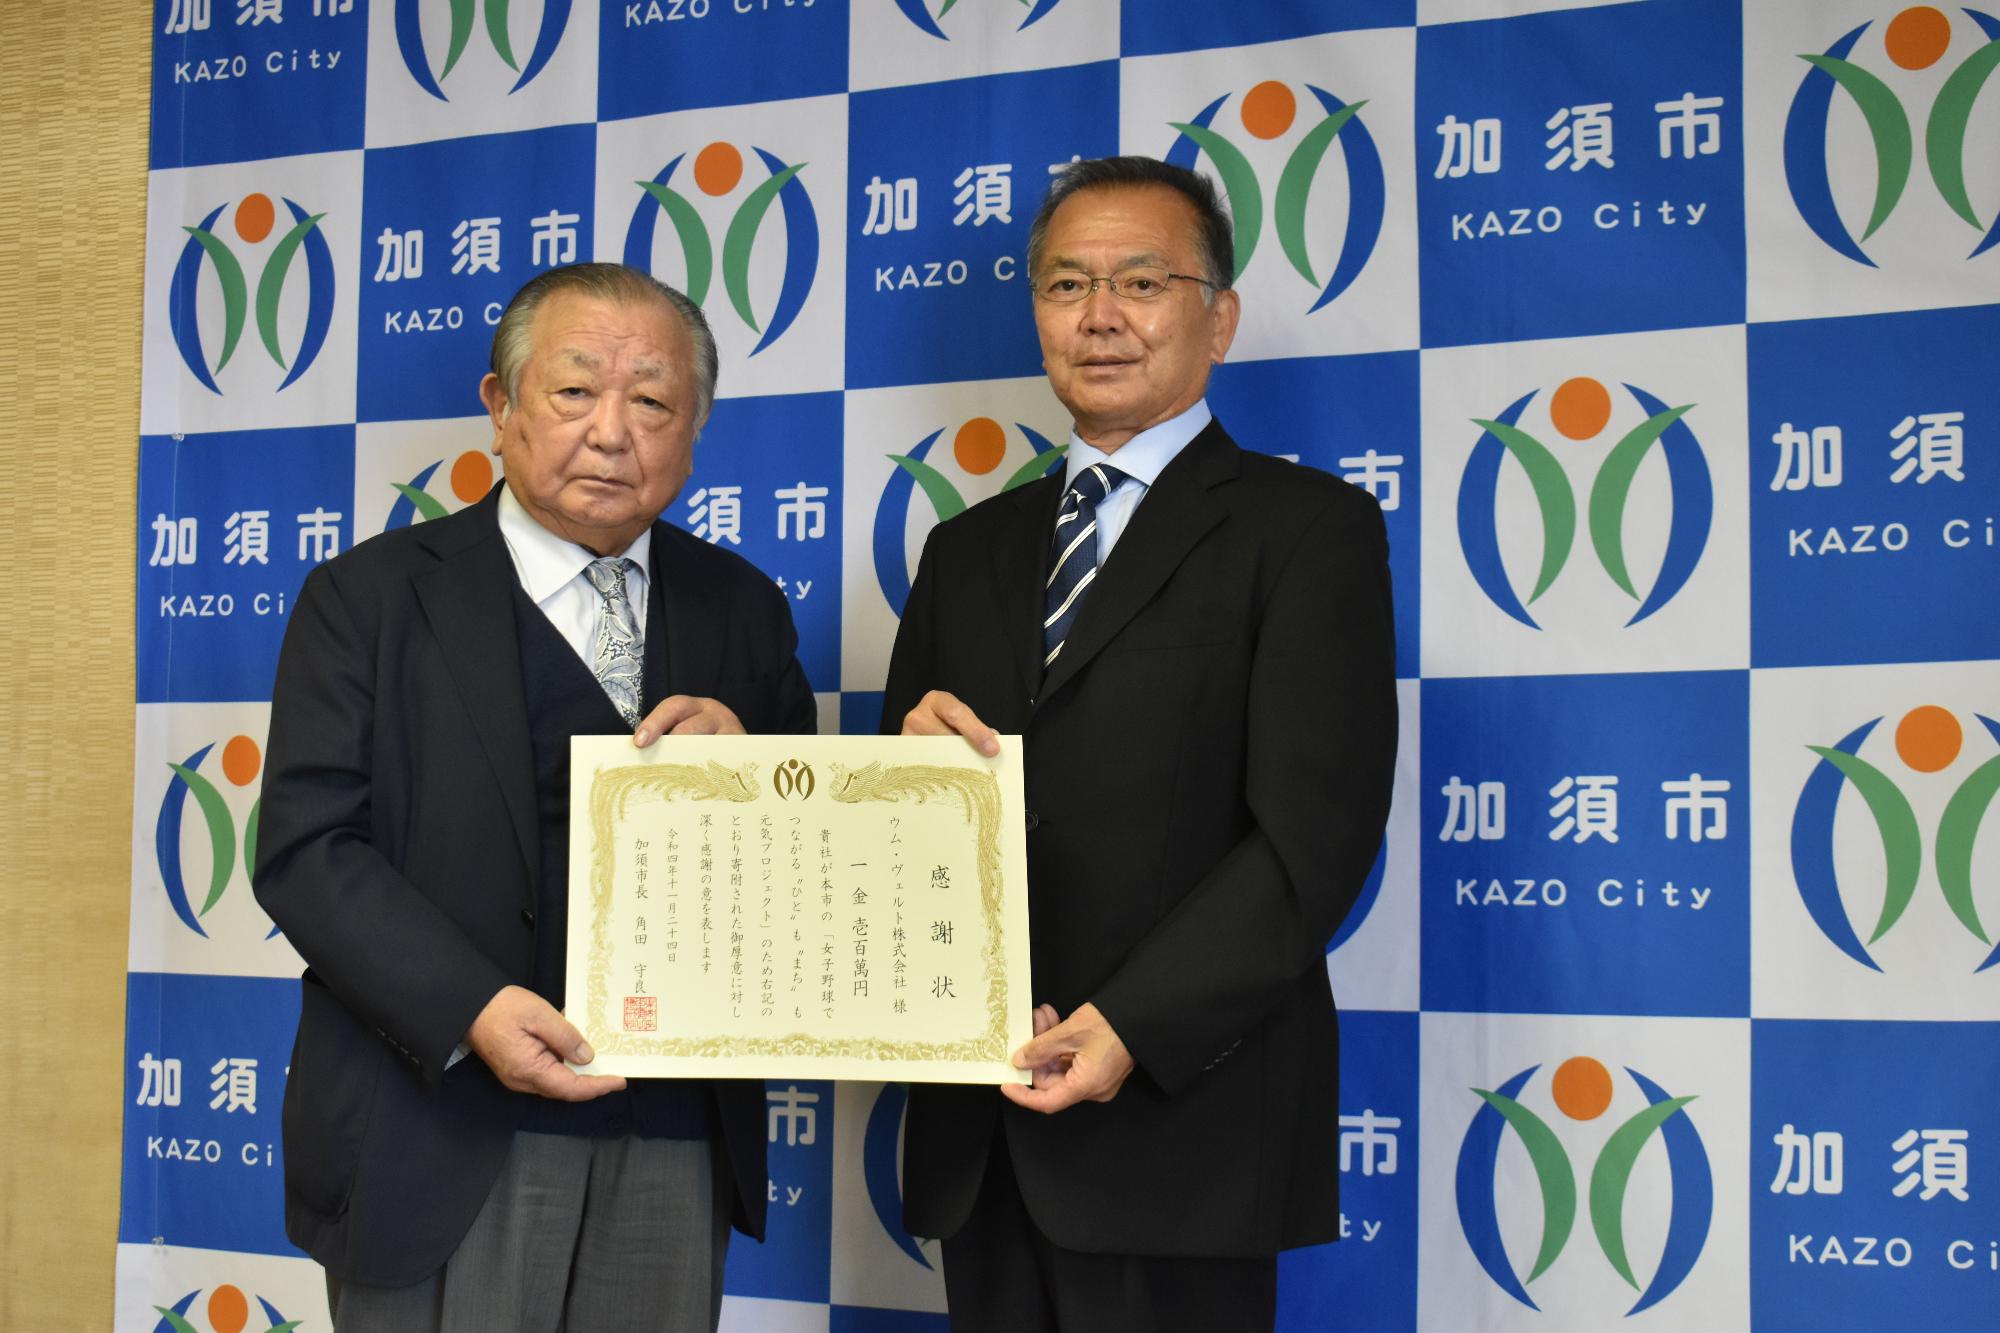 ウム・ヴェルト株式会社 小柳明雄 代表取締役（写真左）、角田守良 市長（写真右）